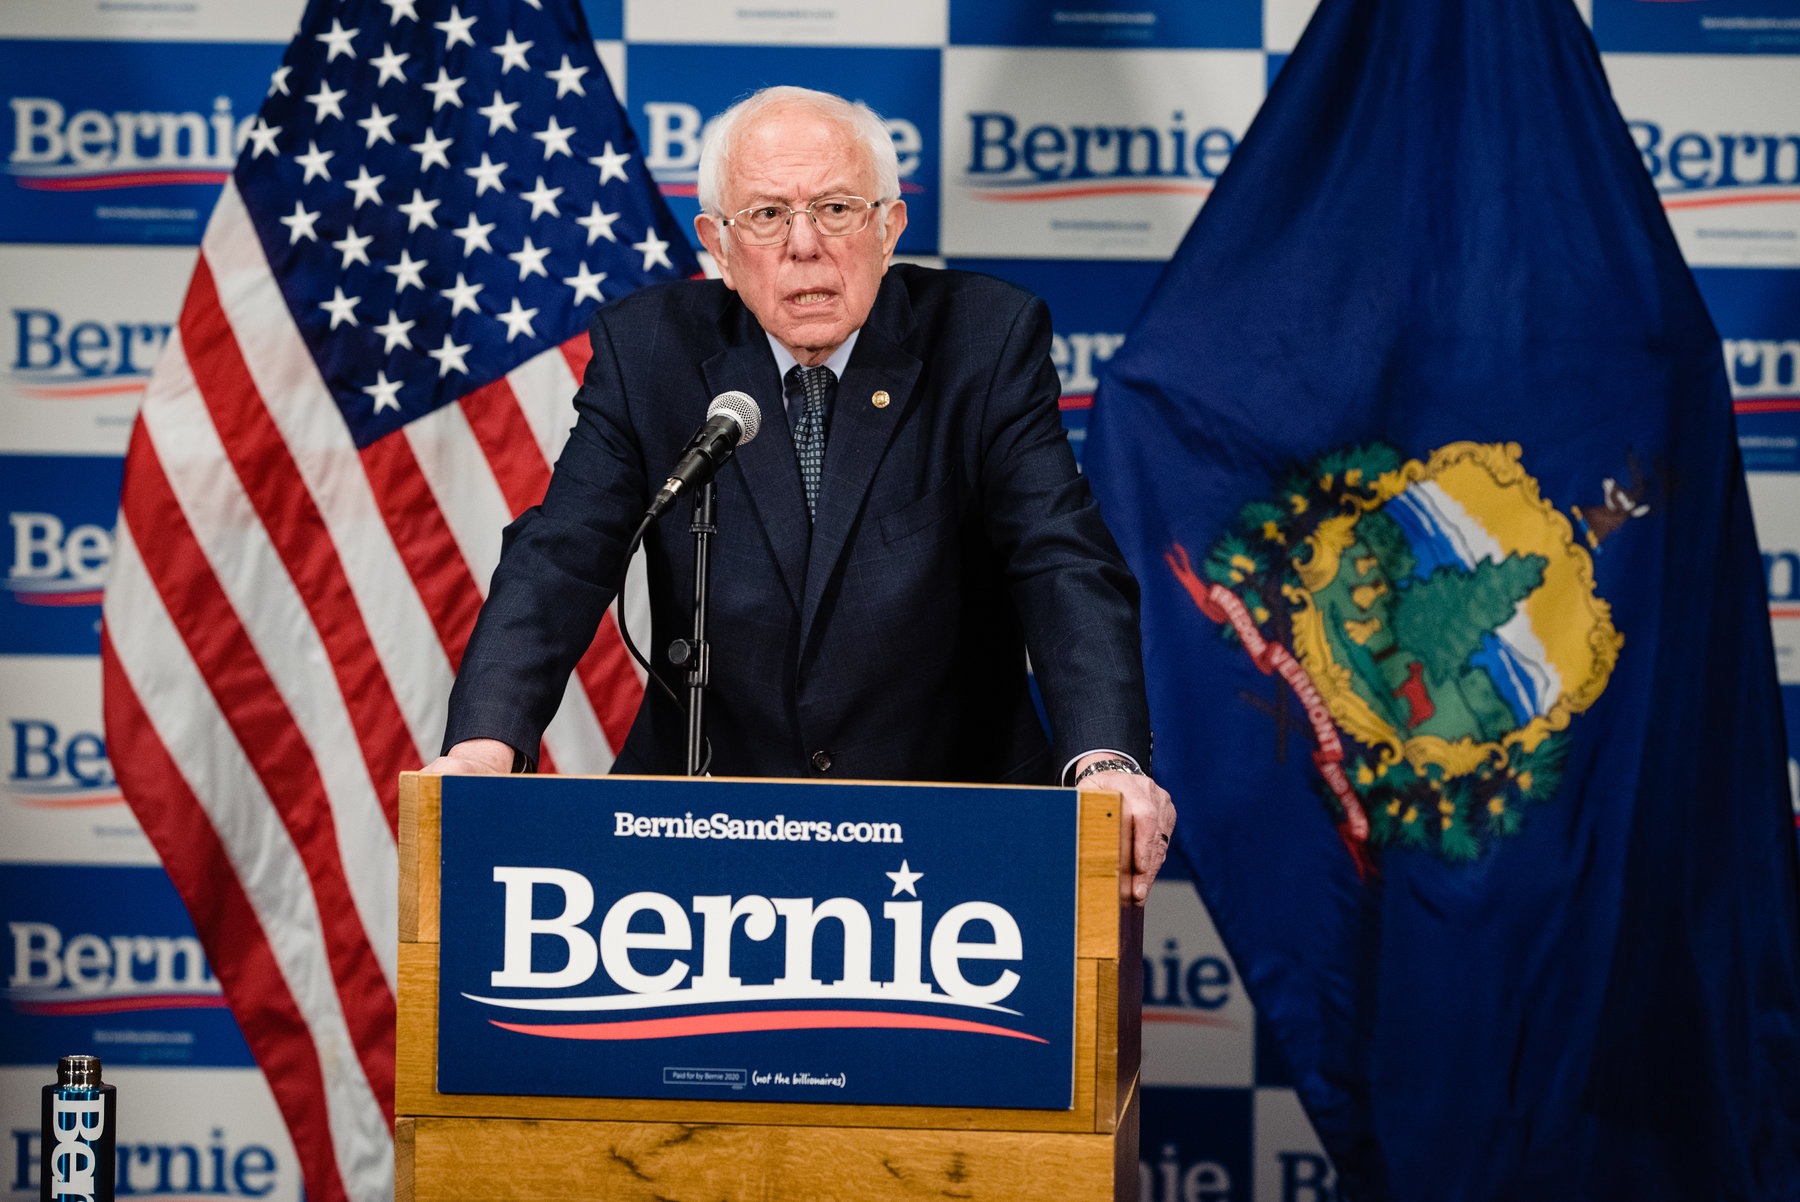 Sanders evalúa su campaña tras victorias sucesivas de Joe Biden